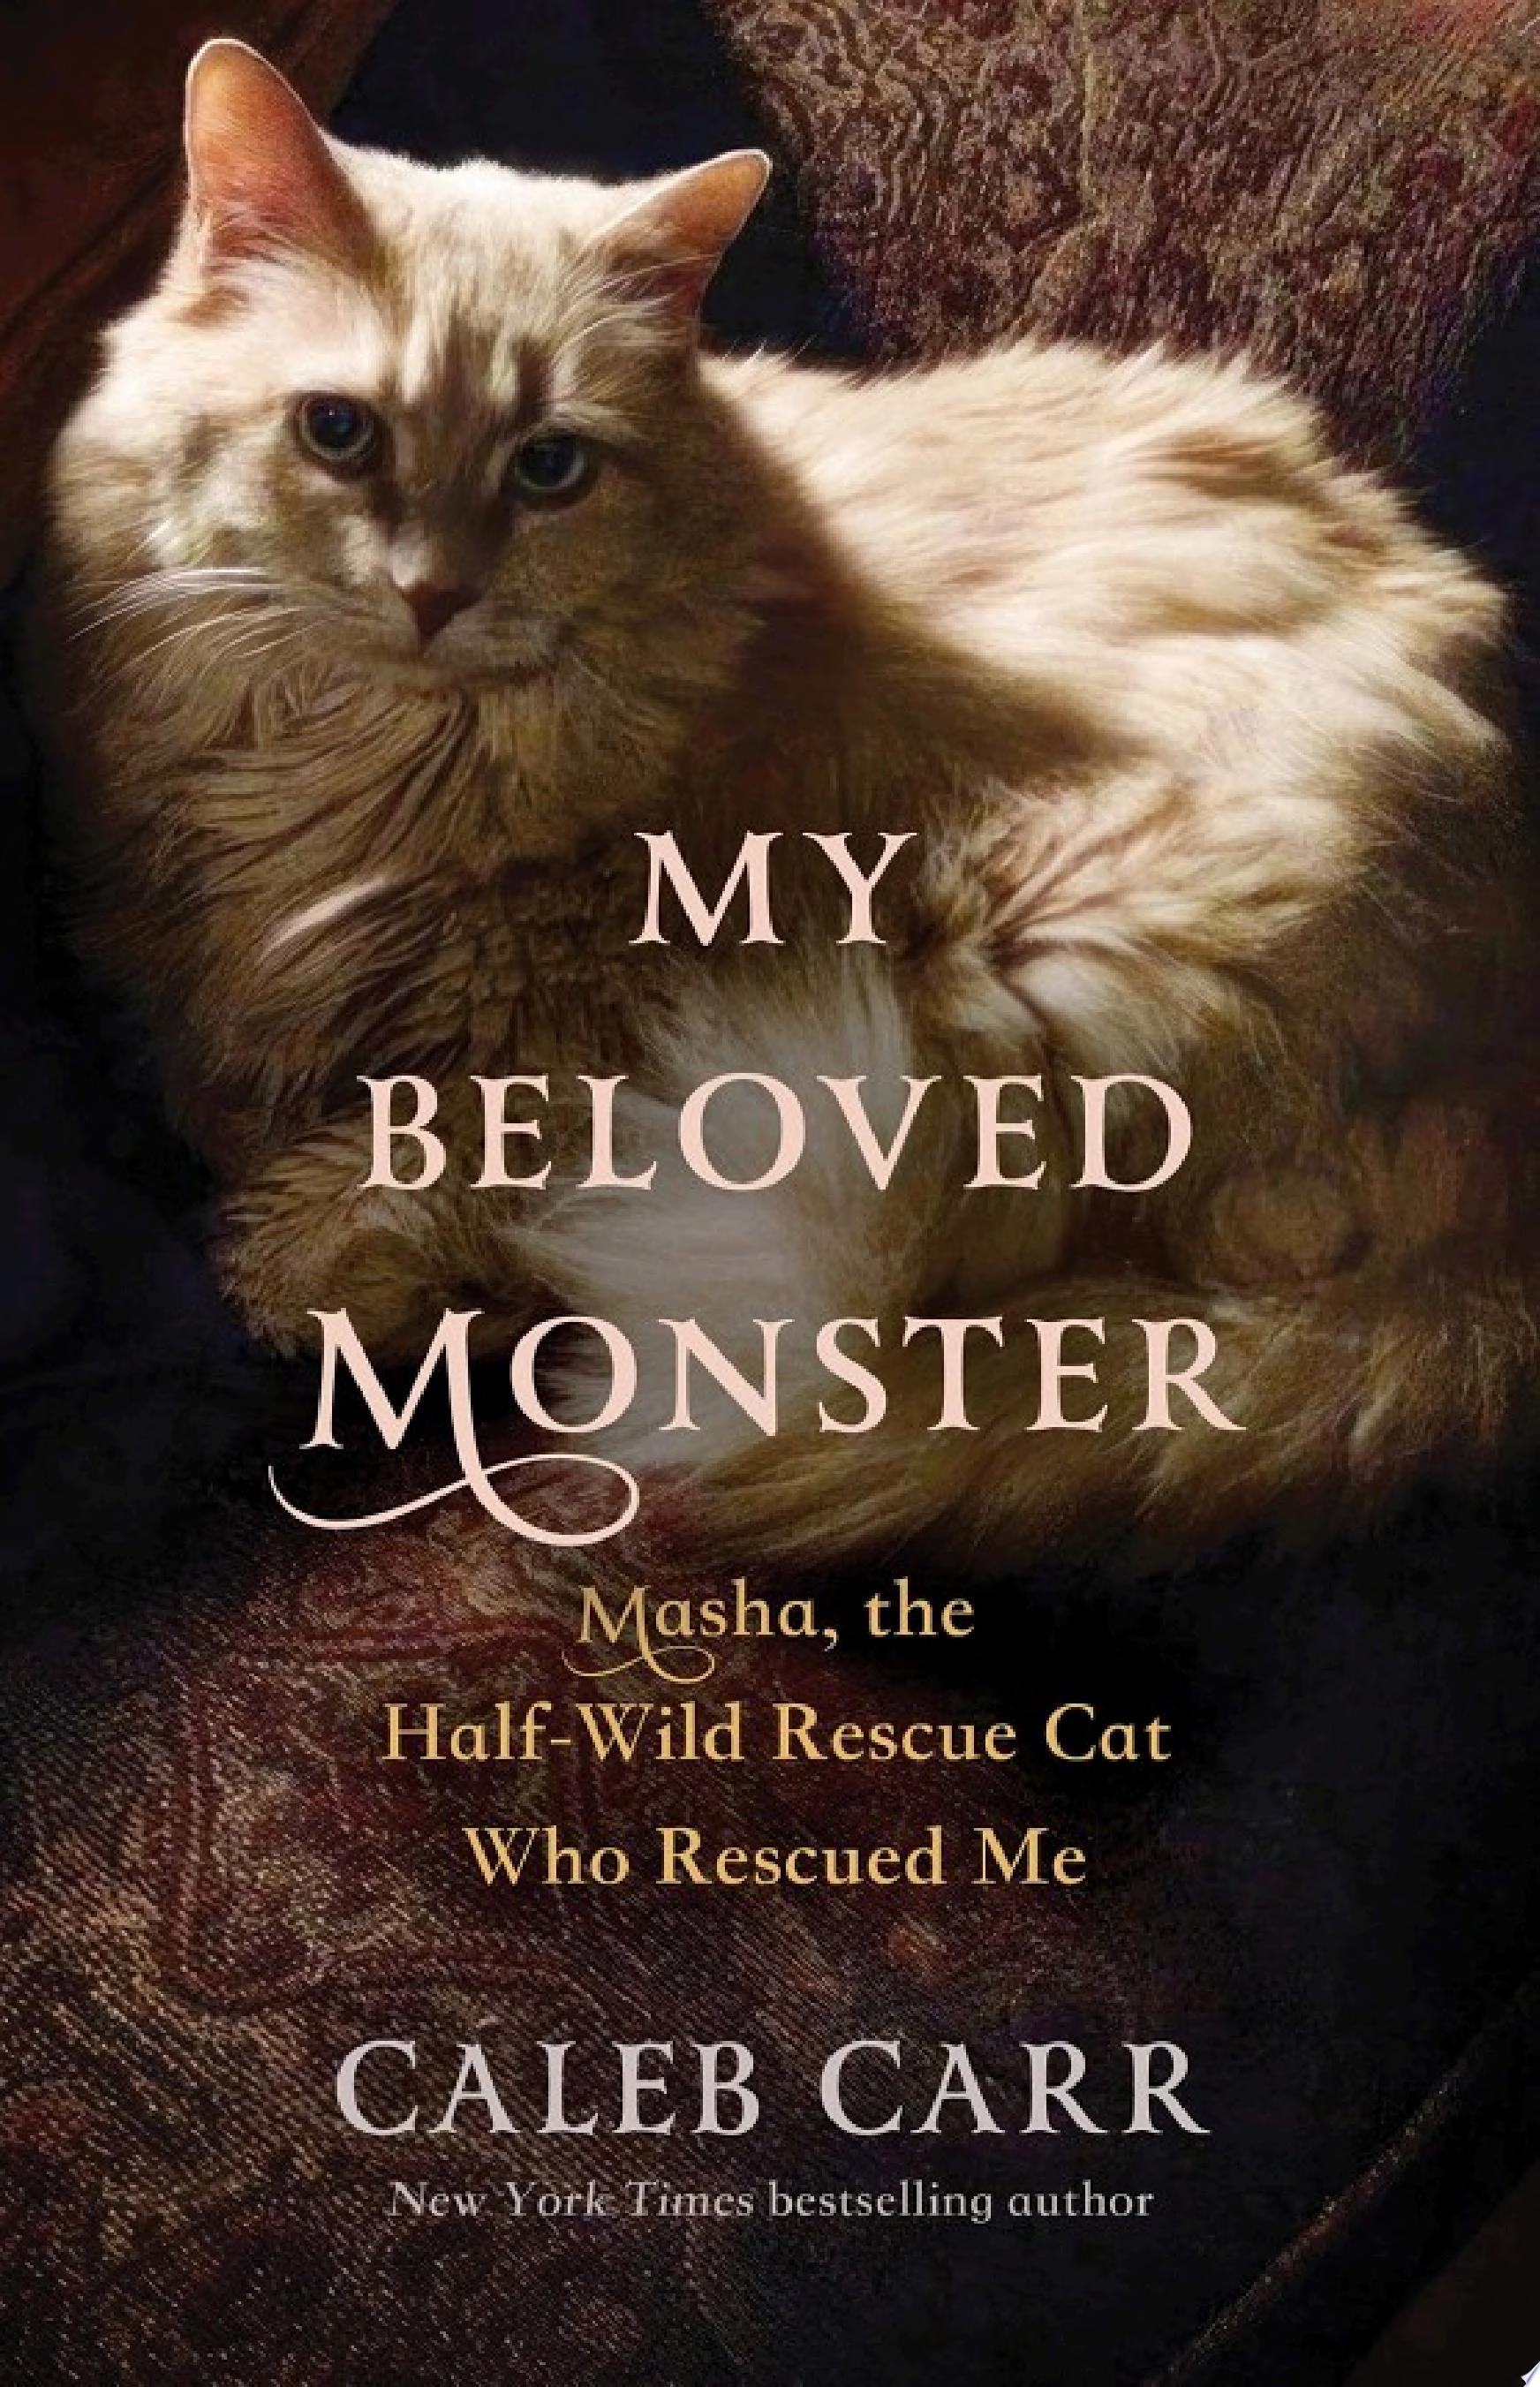 Image for "My Beloved Monster"